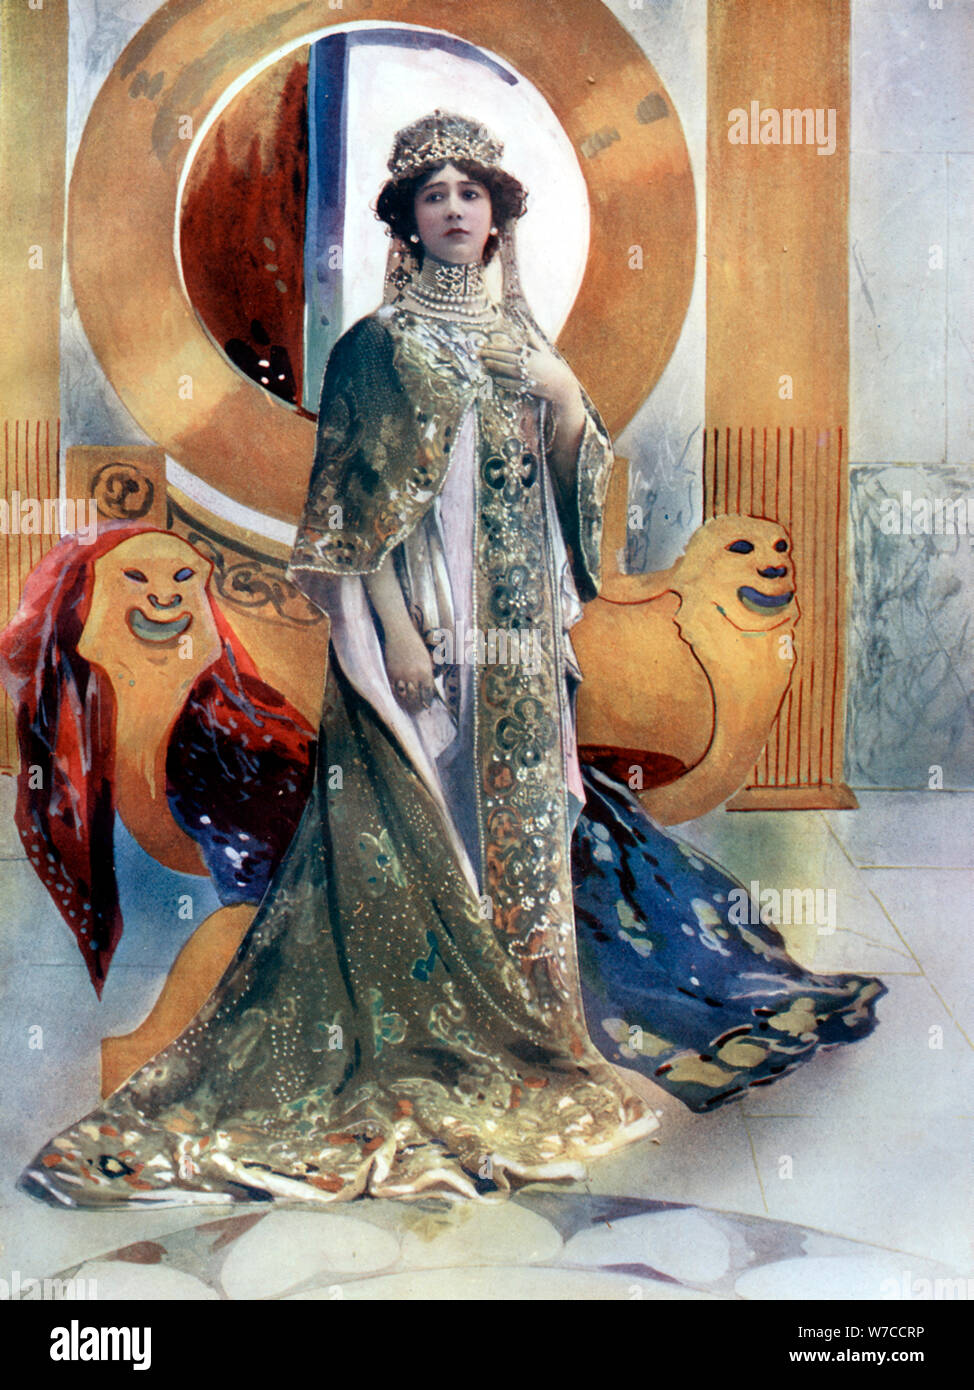 Madame Otero en L'Imperatrice, C1902.Artista: Rautlinger Foto de stock